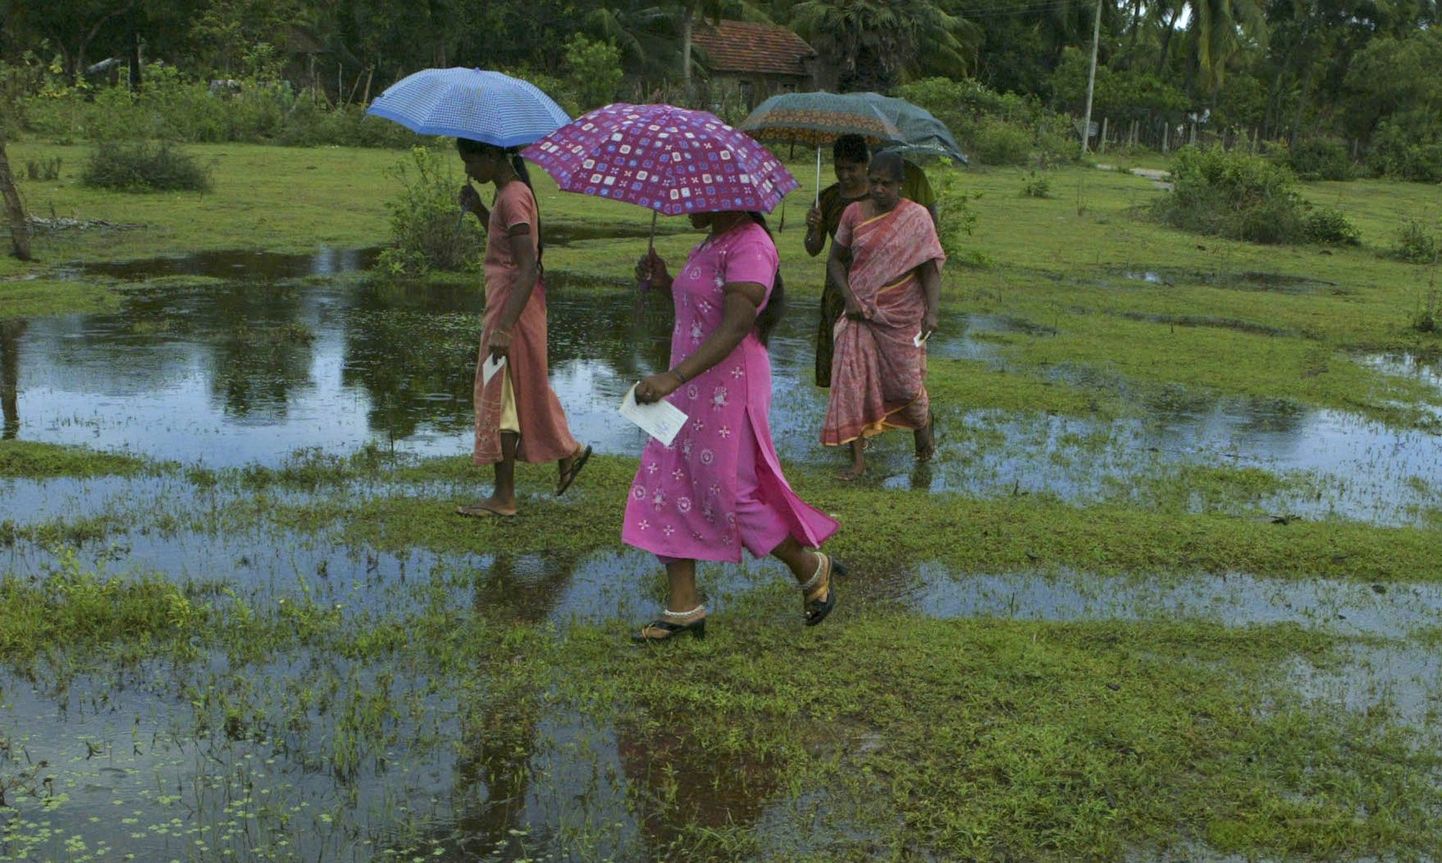 Tamili naised ruttamas vihmavarjudega läbi soise ala Sri Lankas.